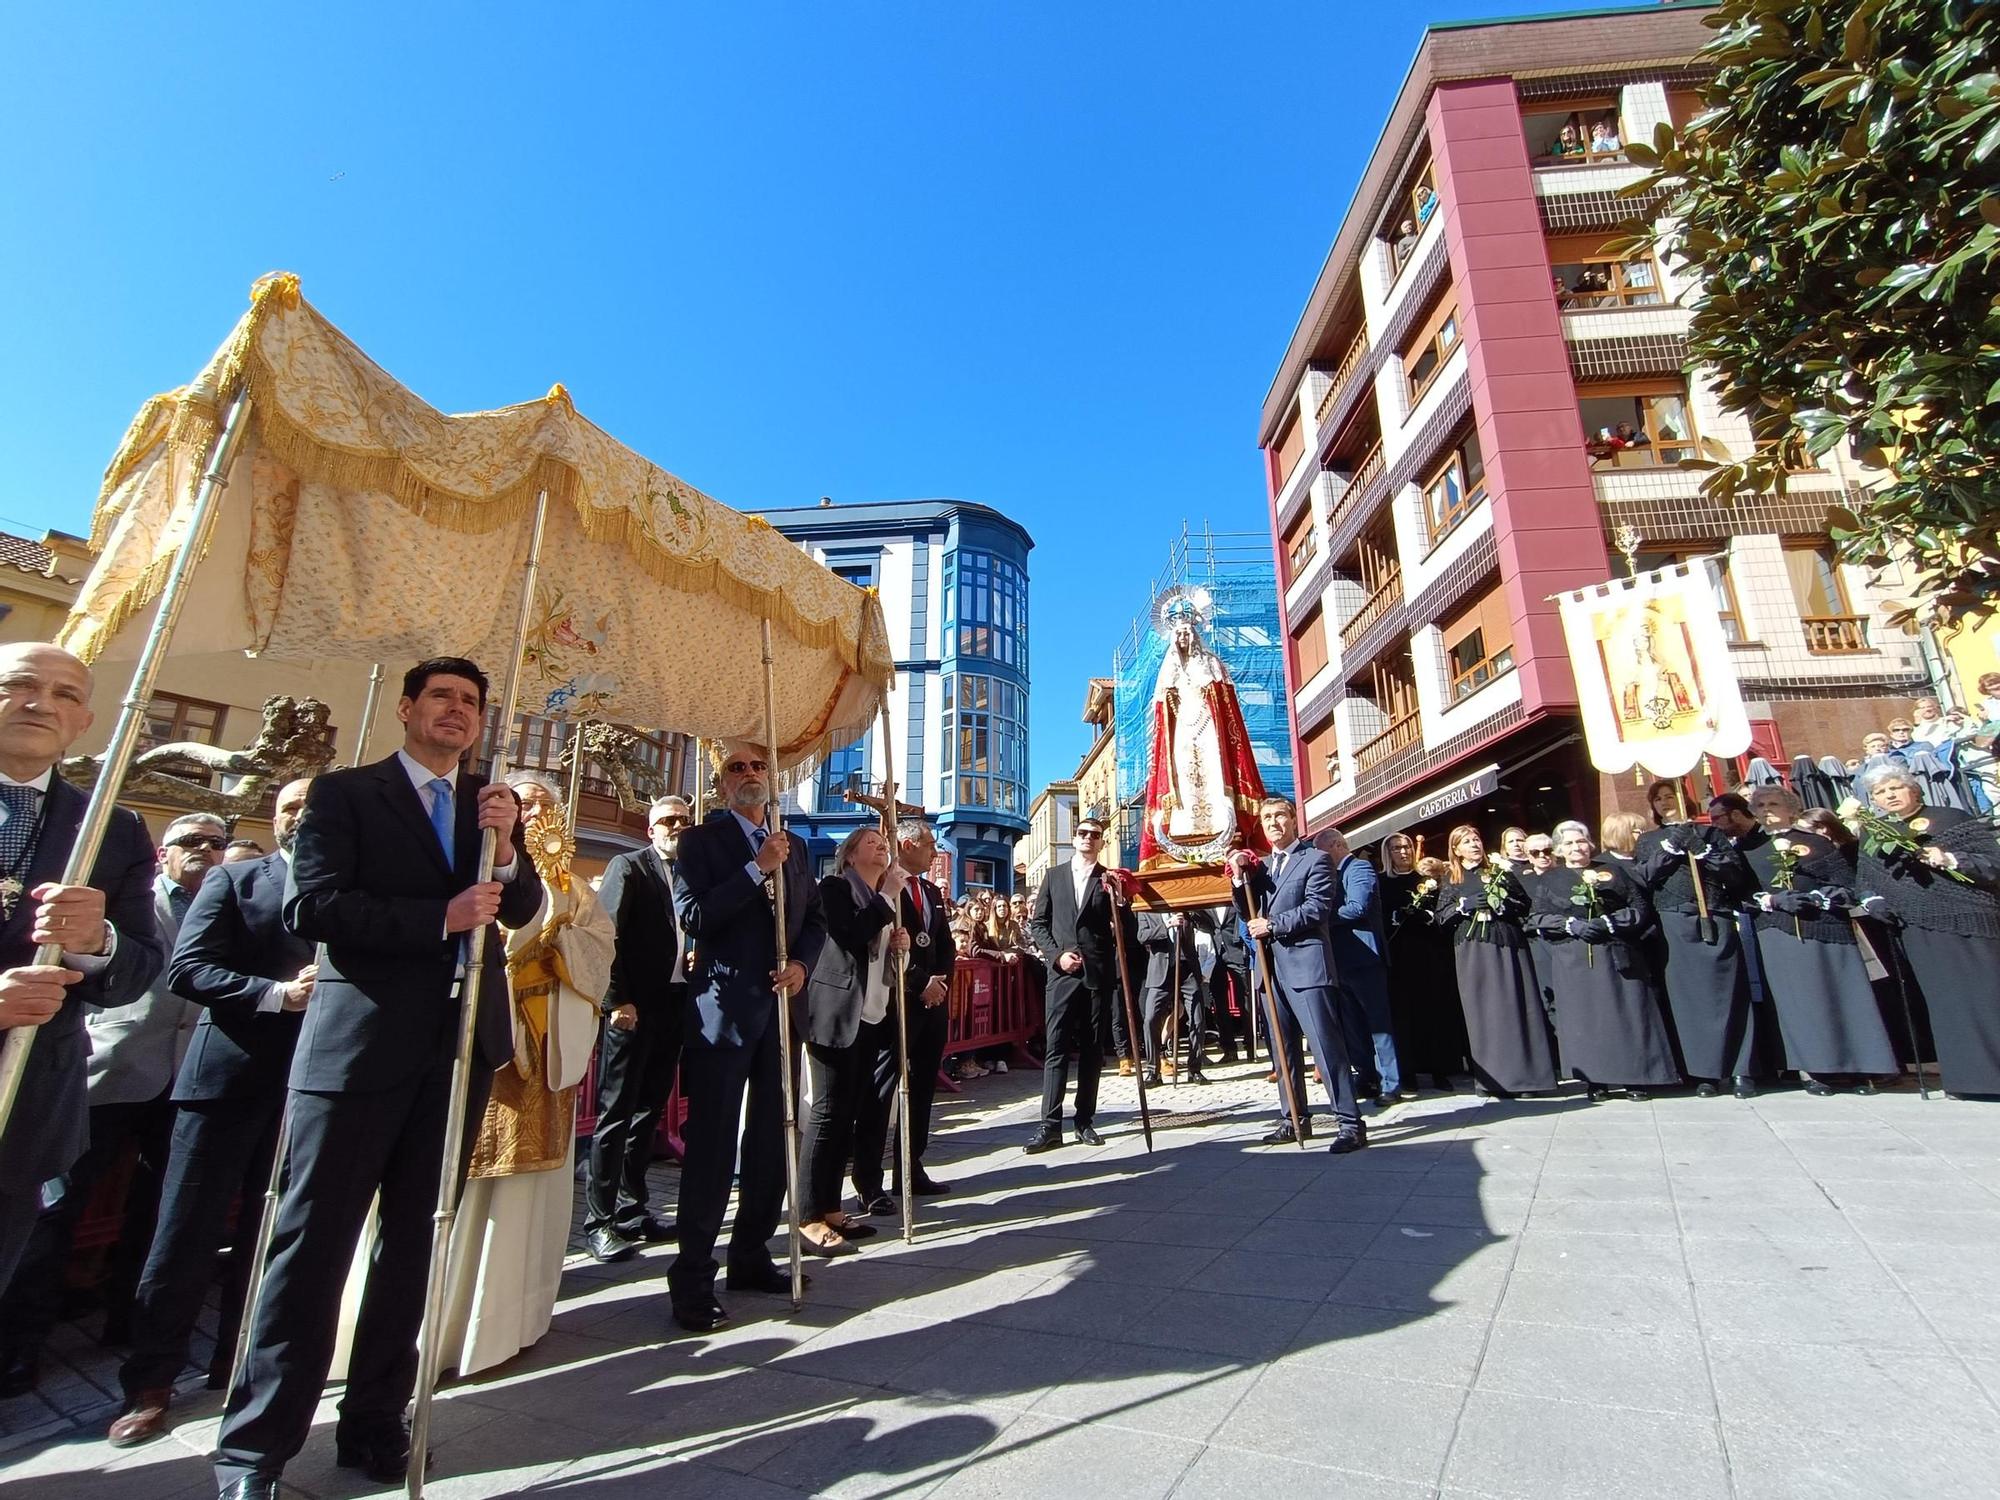 La procesión de "El Encuentro", pone fin a la Semana Santa candasina